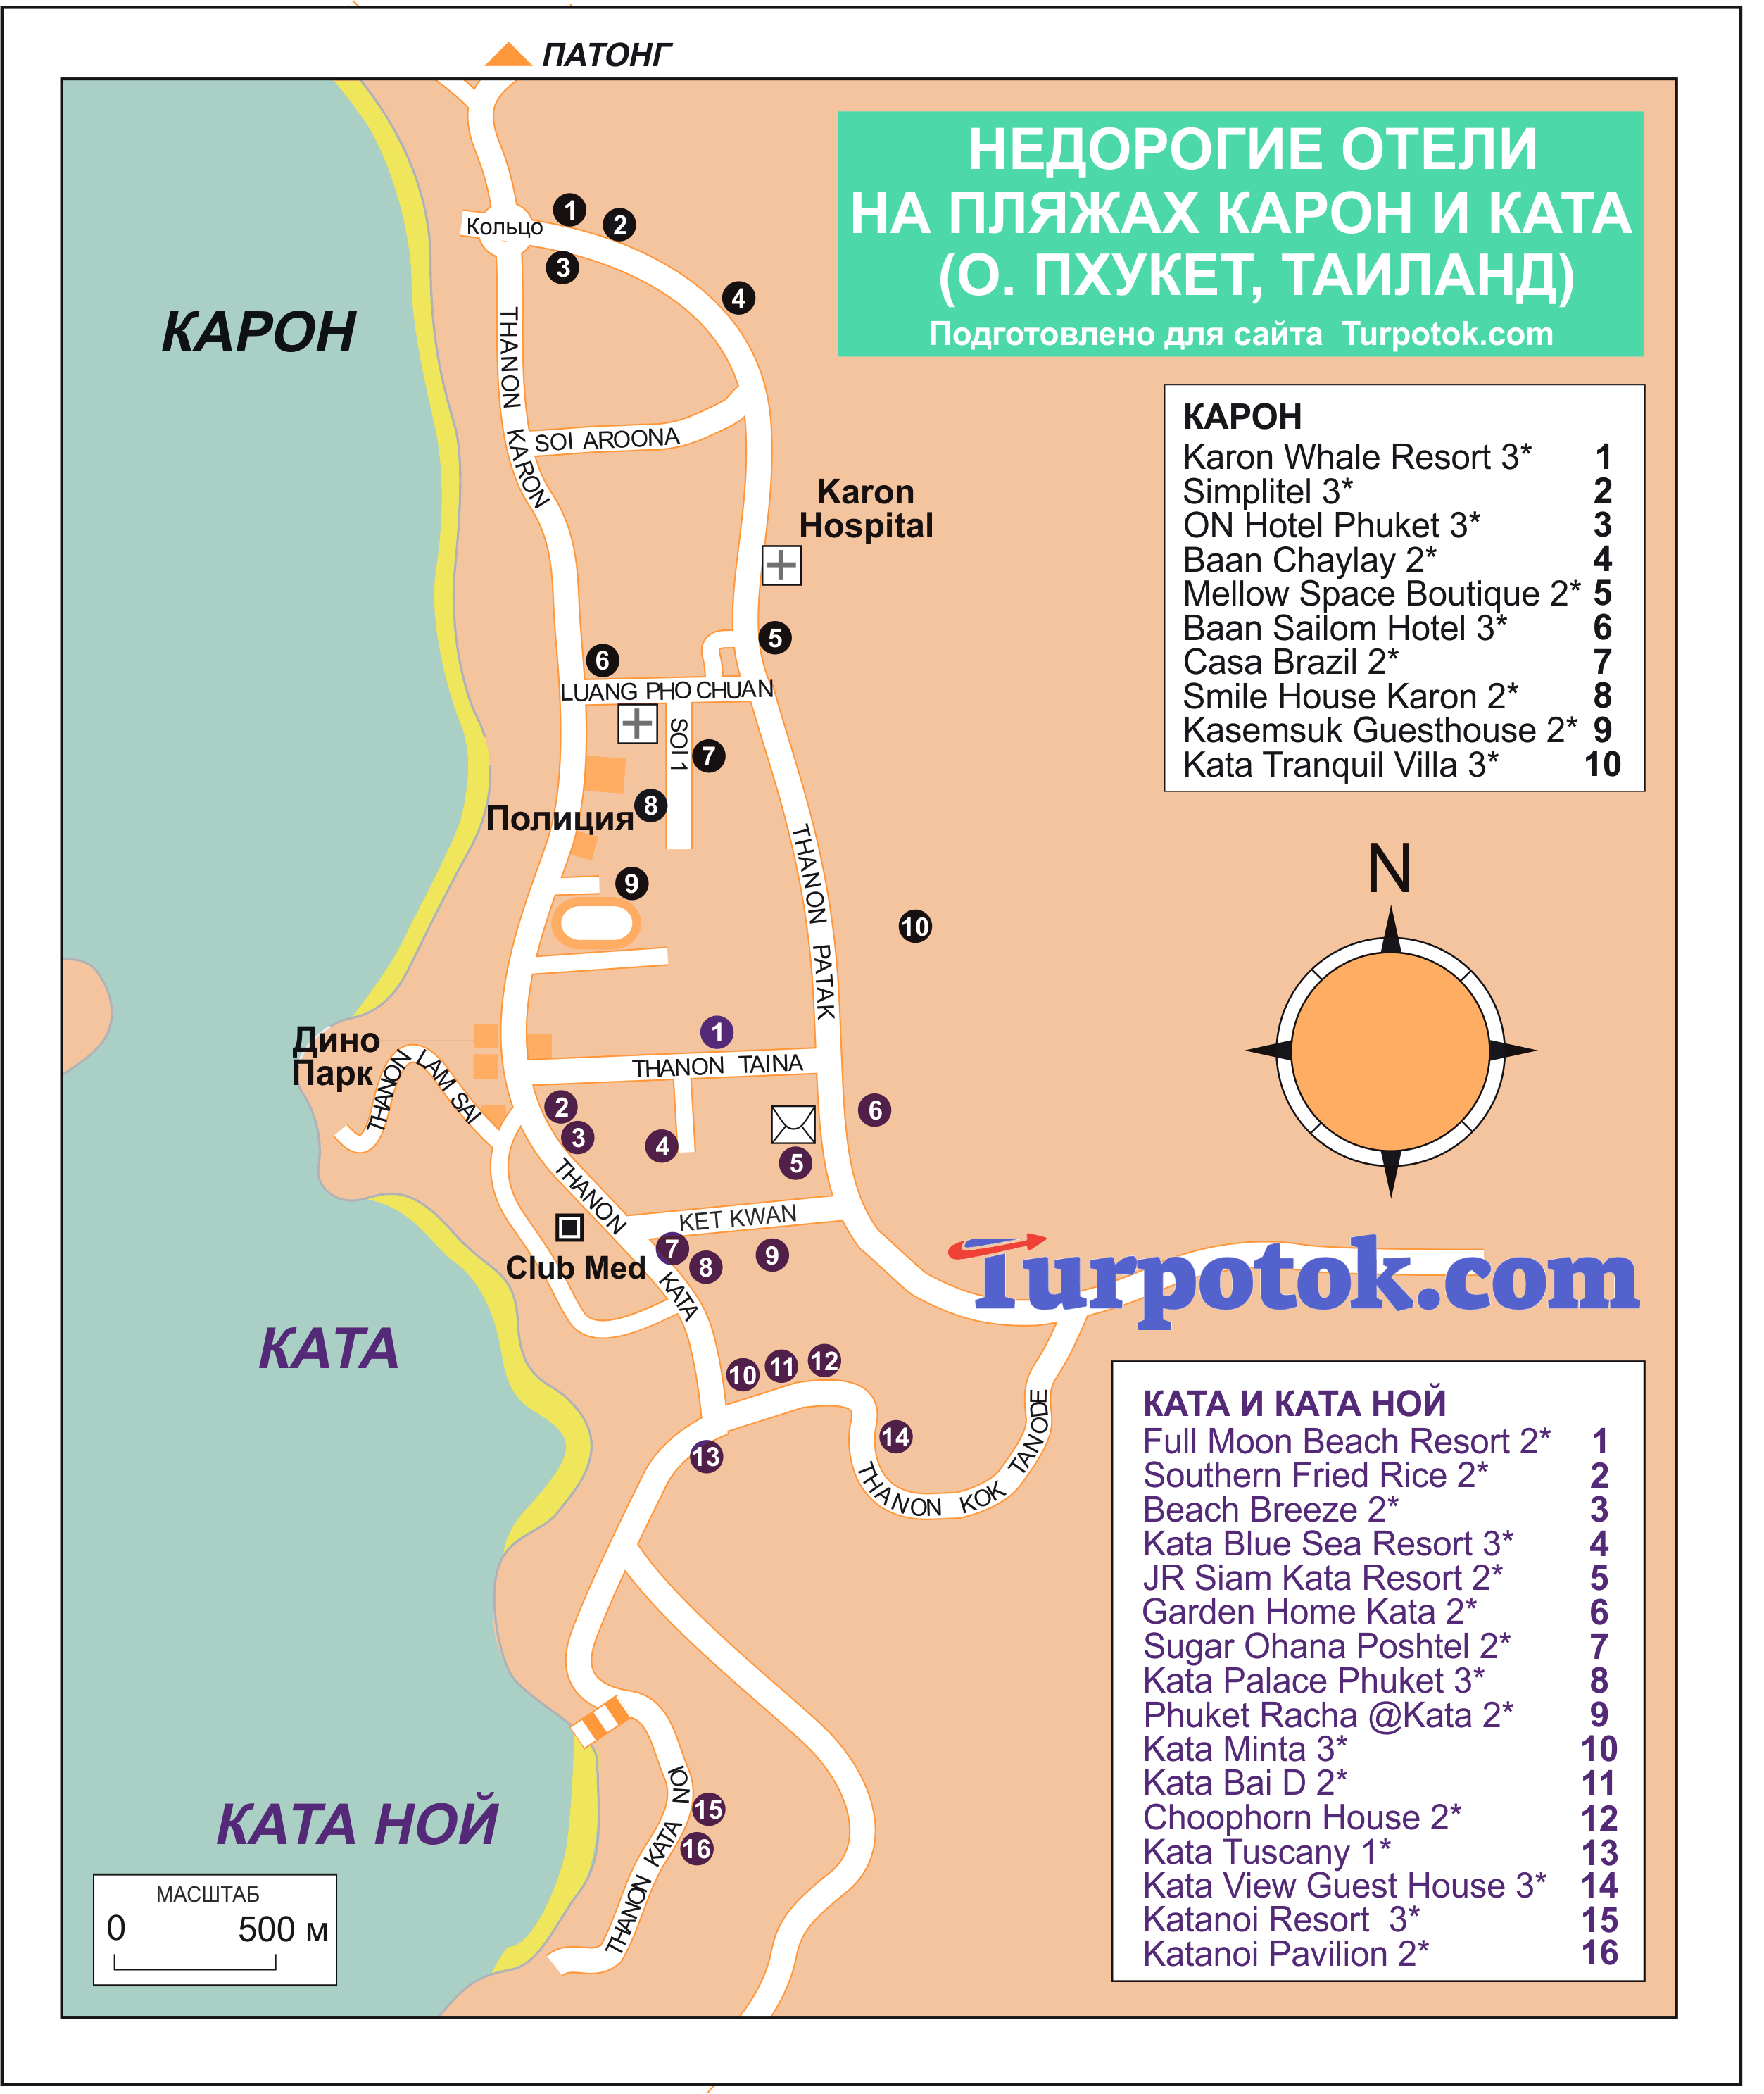 Карта "Недорогие гостиницы на карте Карона и Каты"